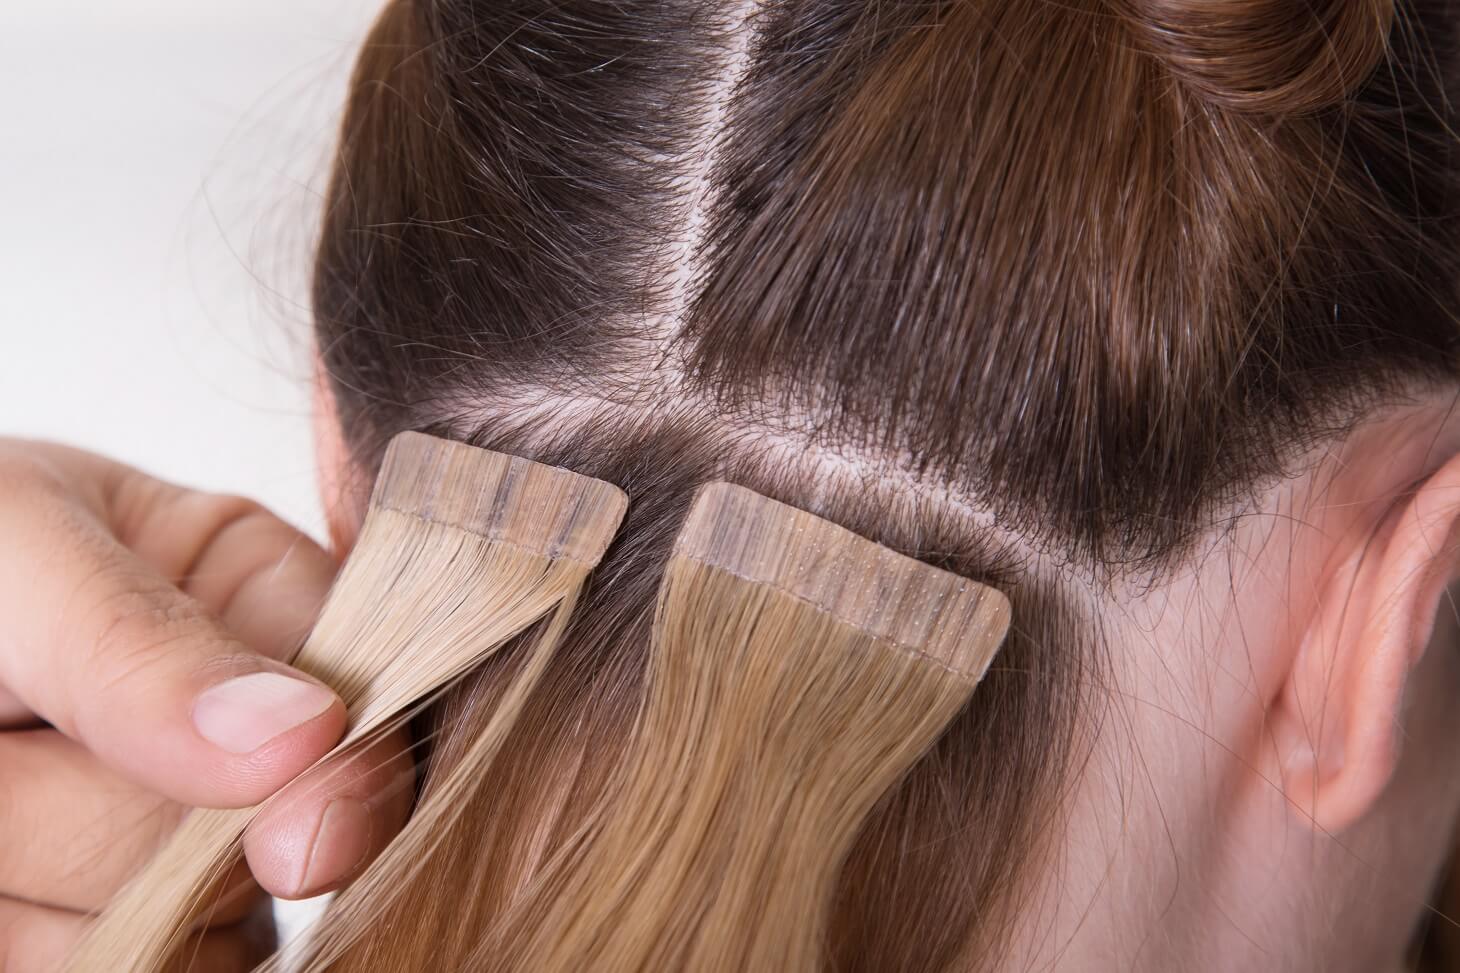 Extensiones adhesivas de cabello: qué son y cómo se colocan - Mejor con  Salud